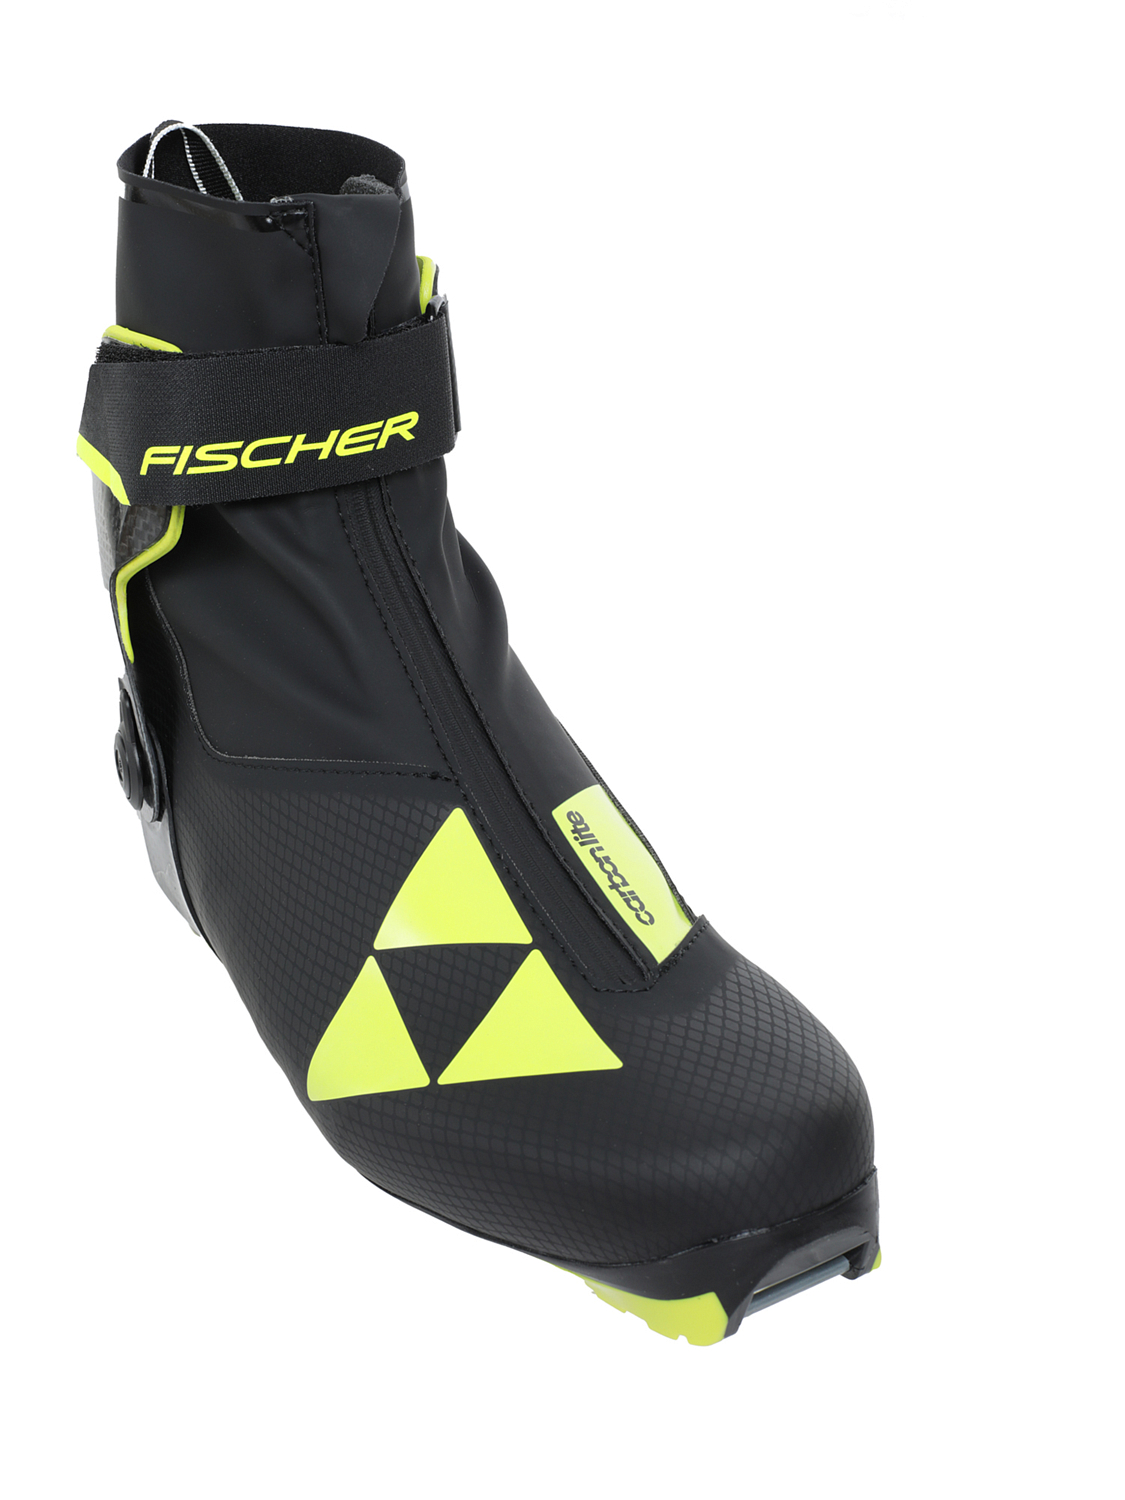 Лыжные ботинки FISCHER 2021-22 Carbonlite Skate